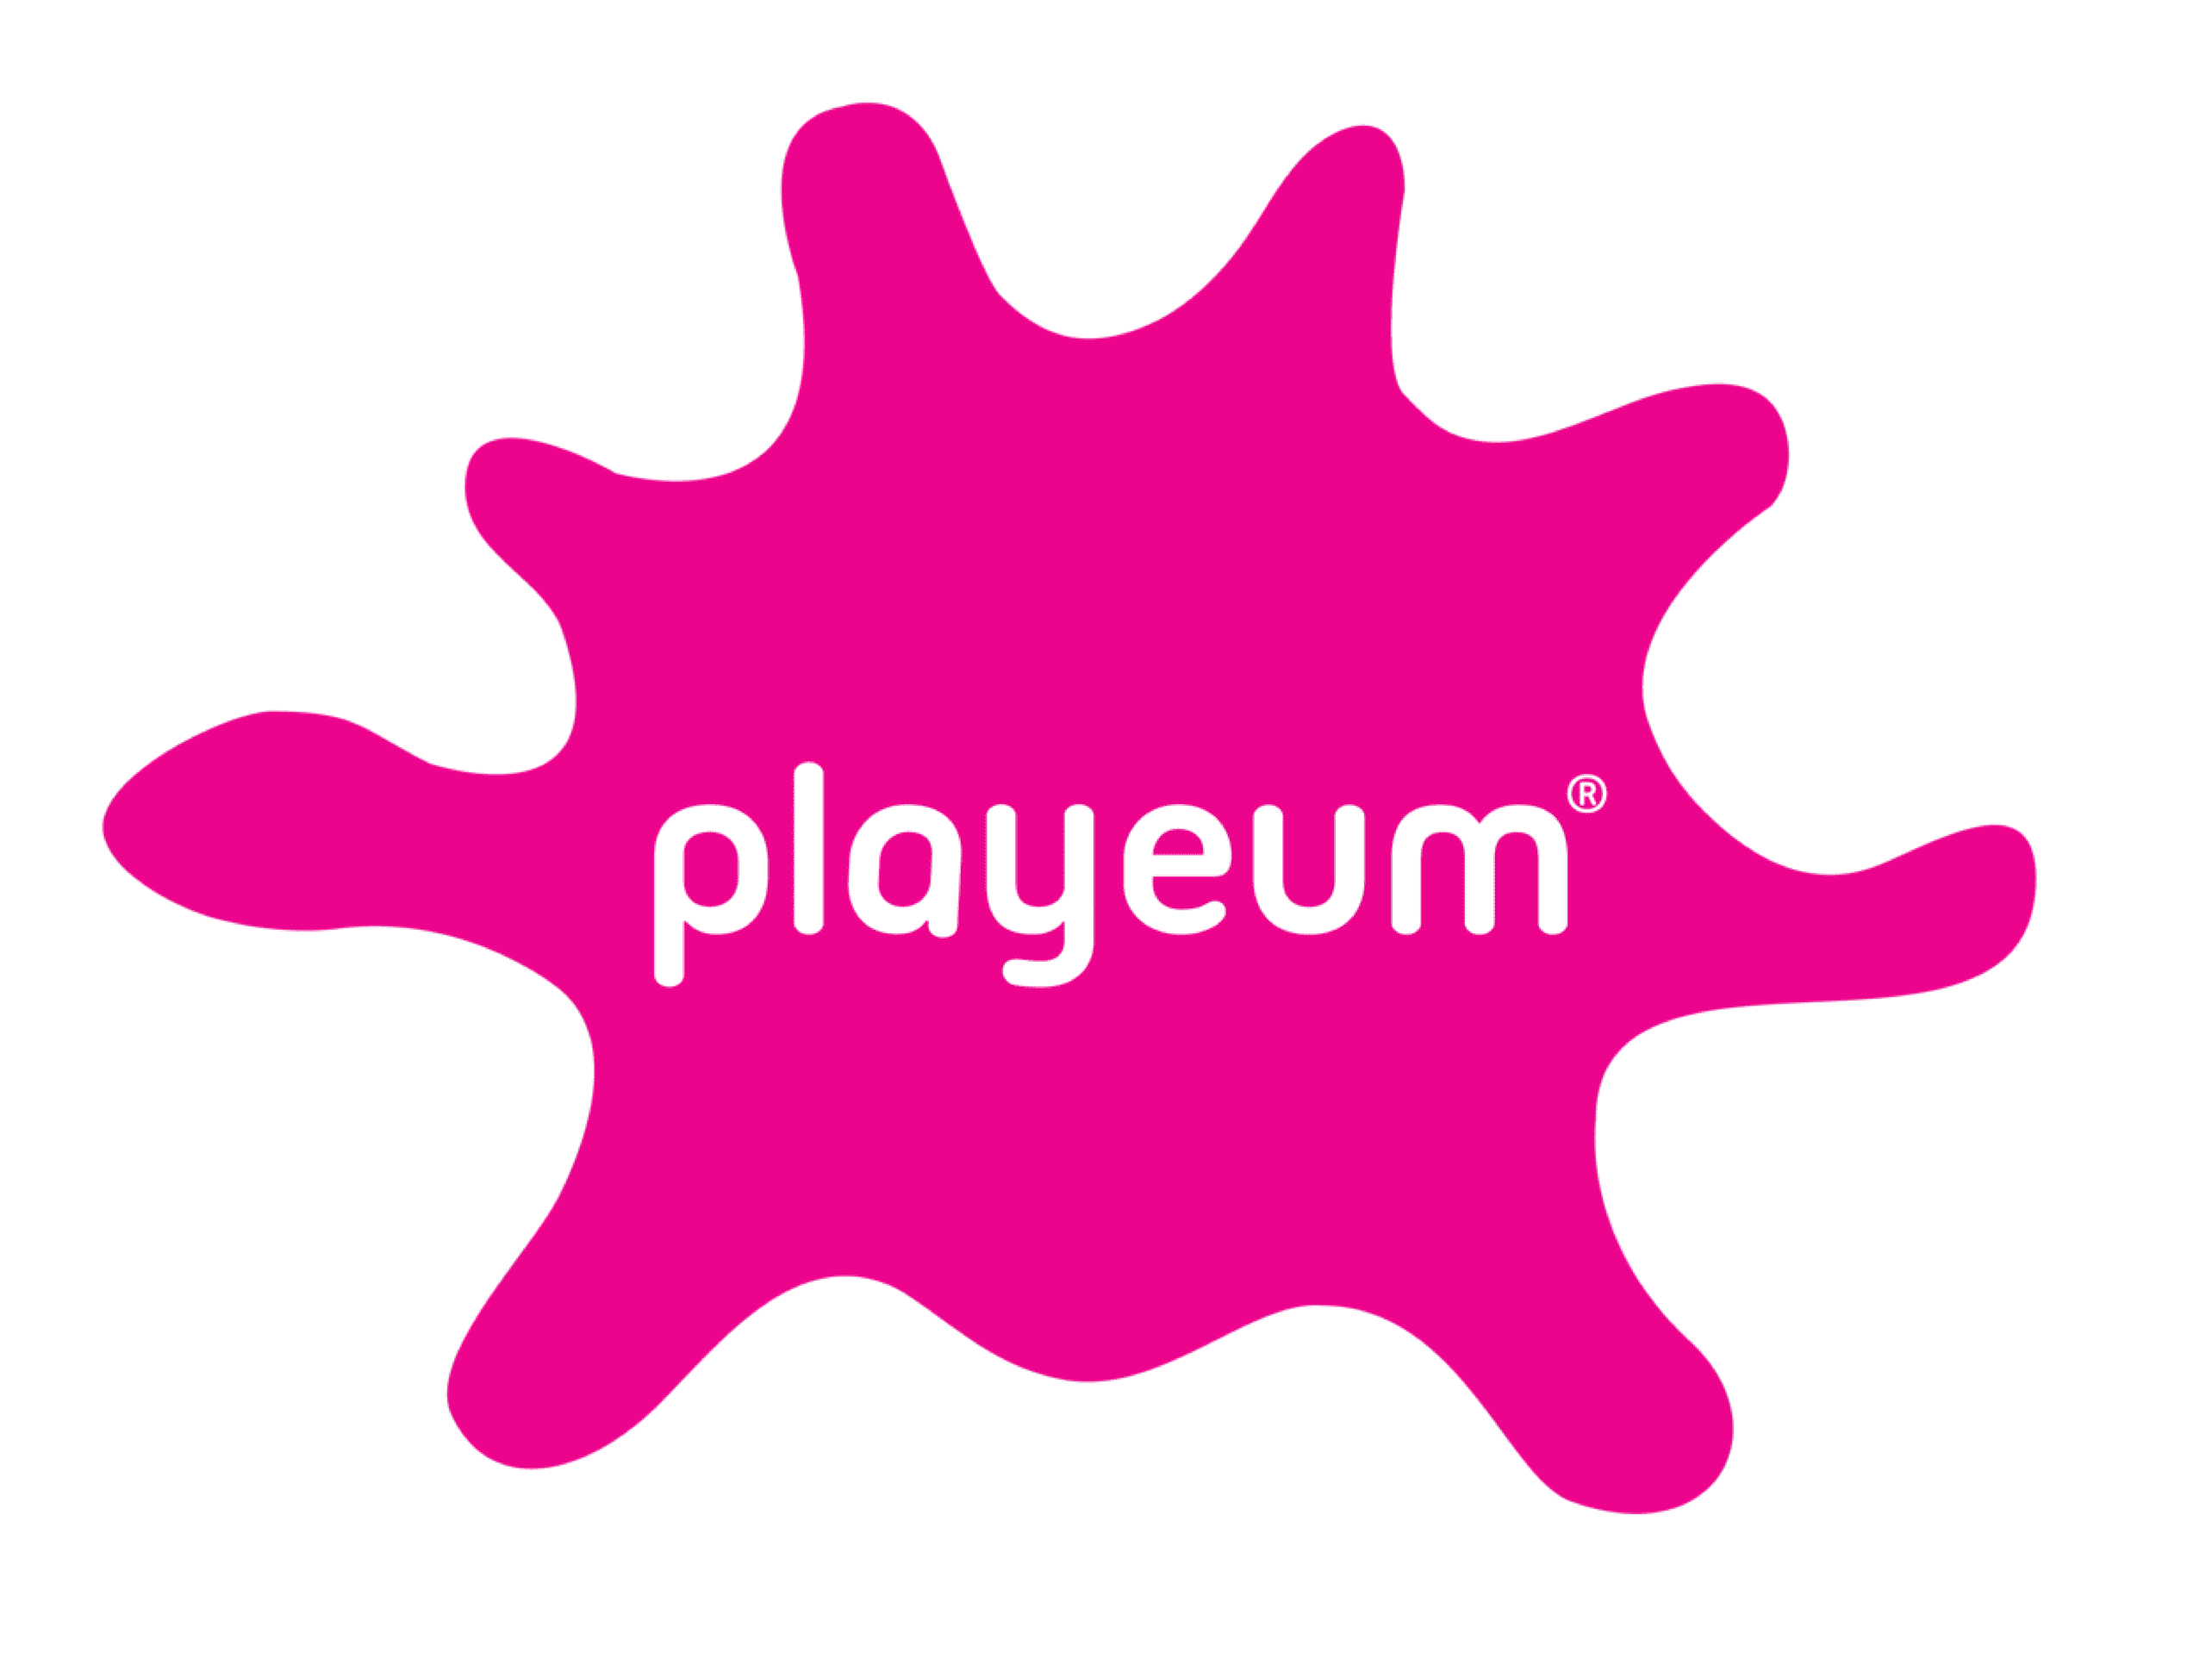 playeum logo